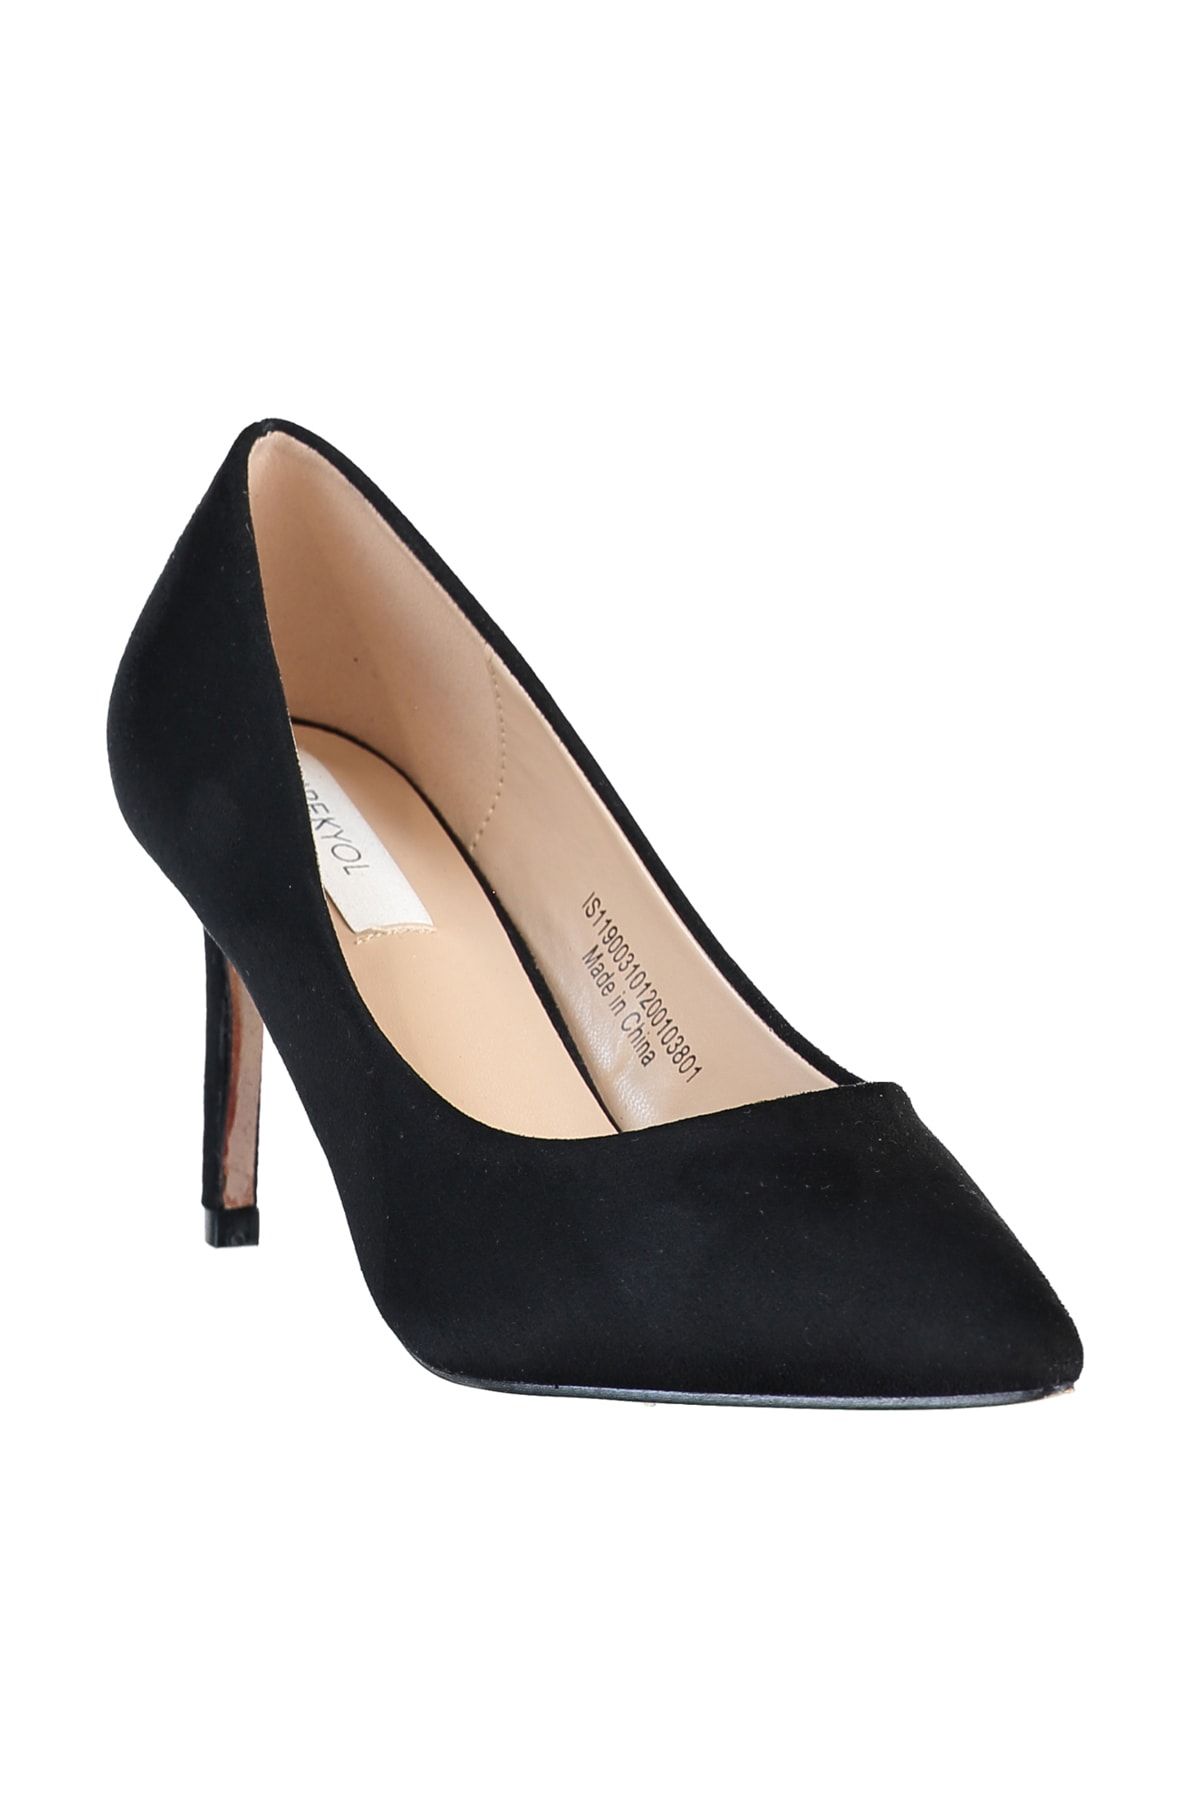 İpekyol Kadın Siyah Klasik Topuklu Ayakkabı IS1190031012